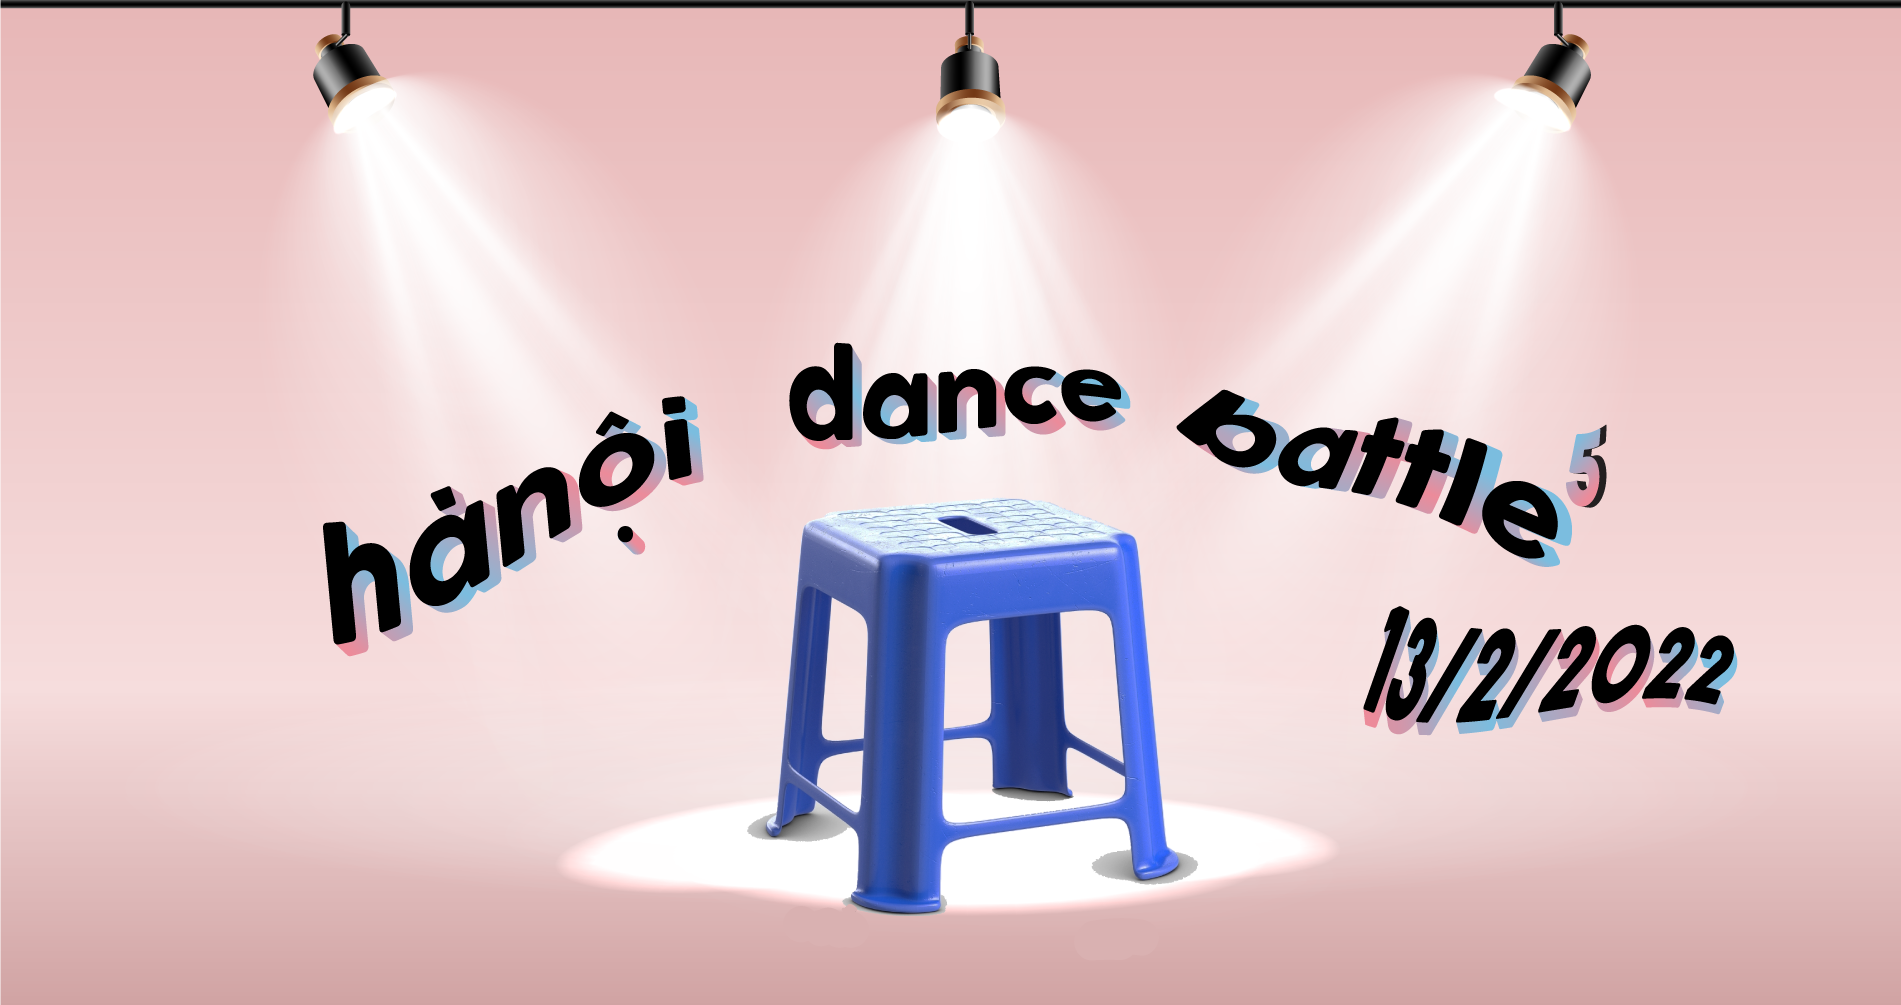 Cuộc thi nhảy - Hanoi Dance Battle 5 - Ngày 13.02.2022